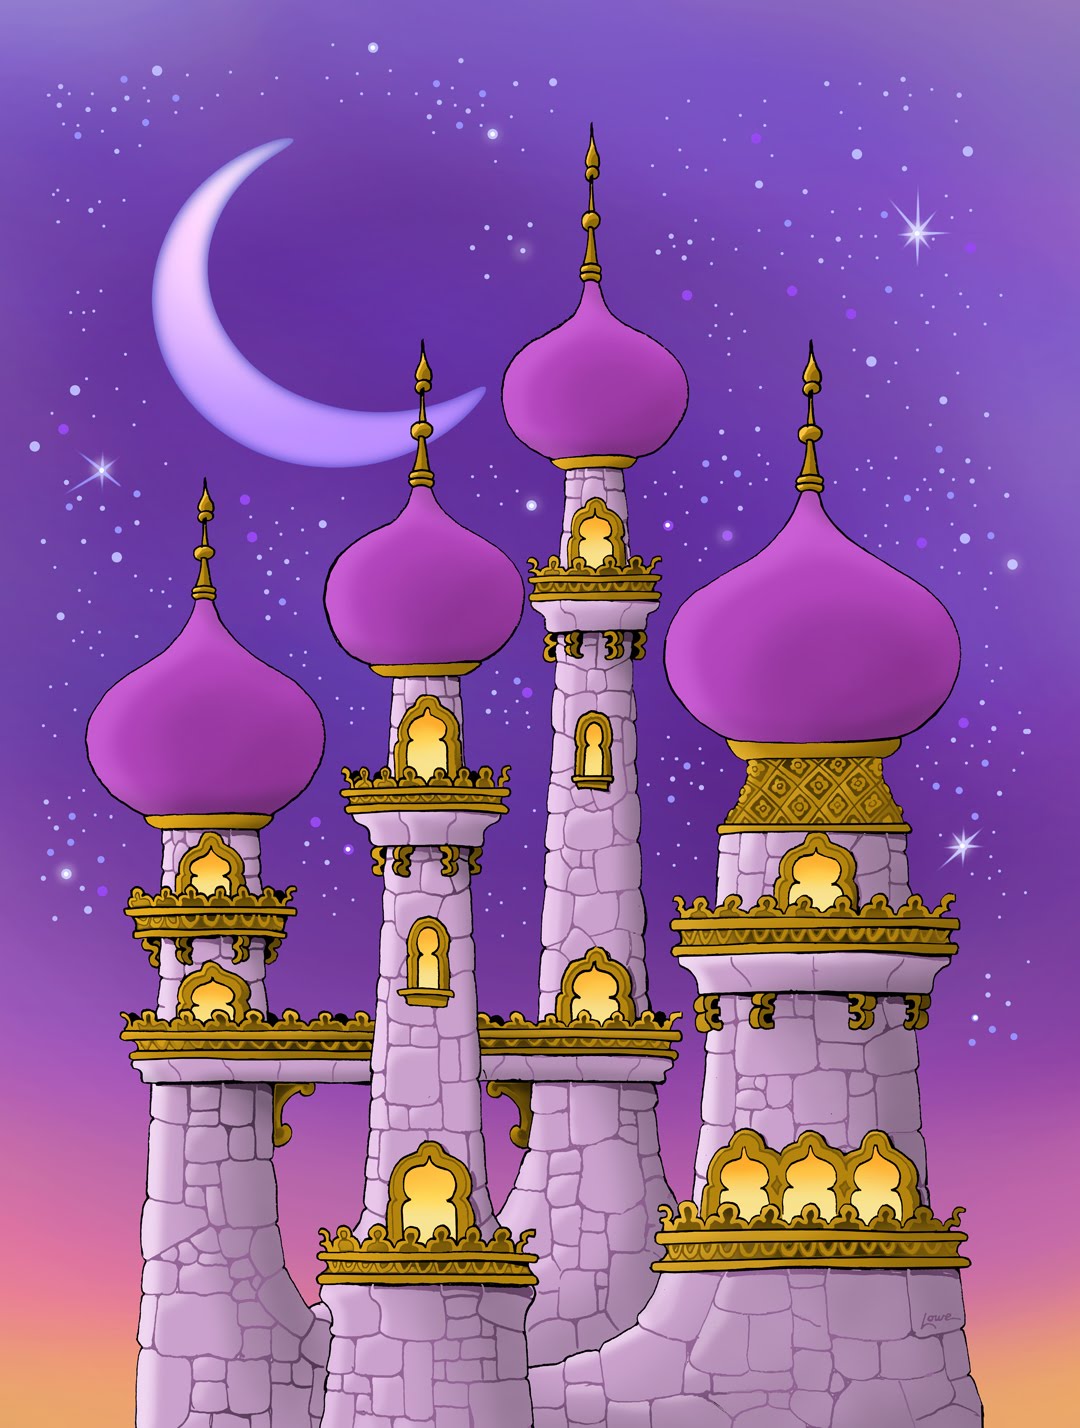 Как будет арабская ночь. Аладдин Аграба. Аграба алладин дворец. Алладин дворец Султана Дисней. Дворец Шахерезады 1001 ночь.